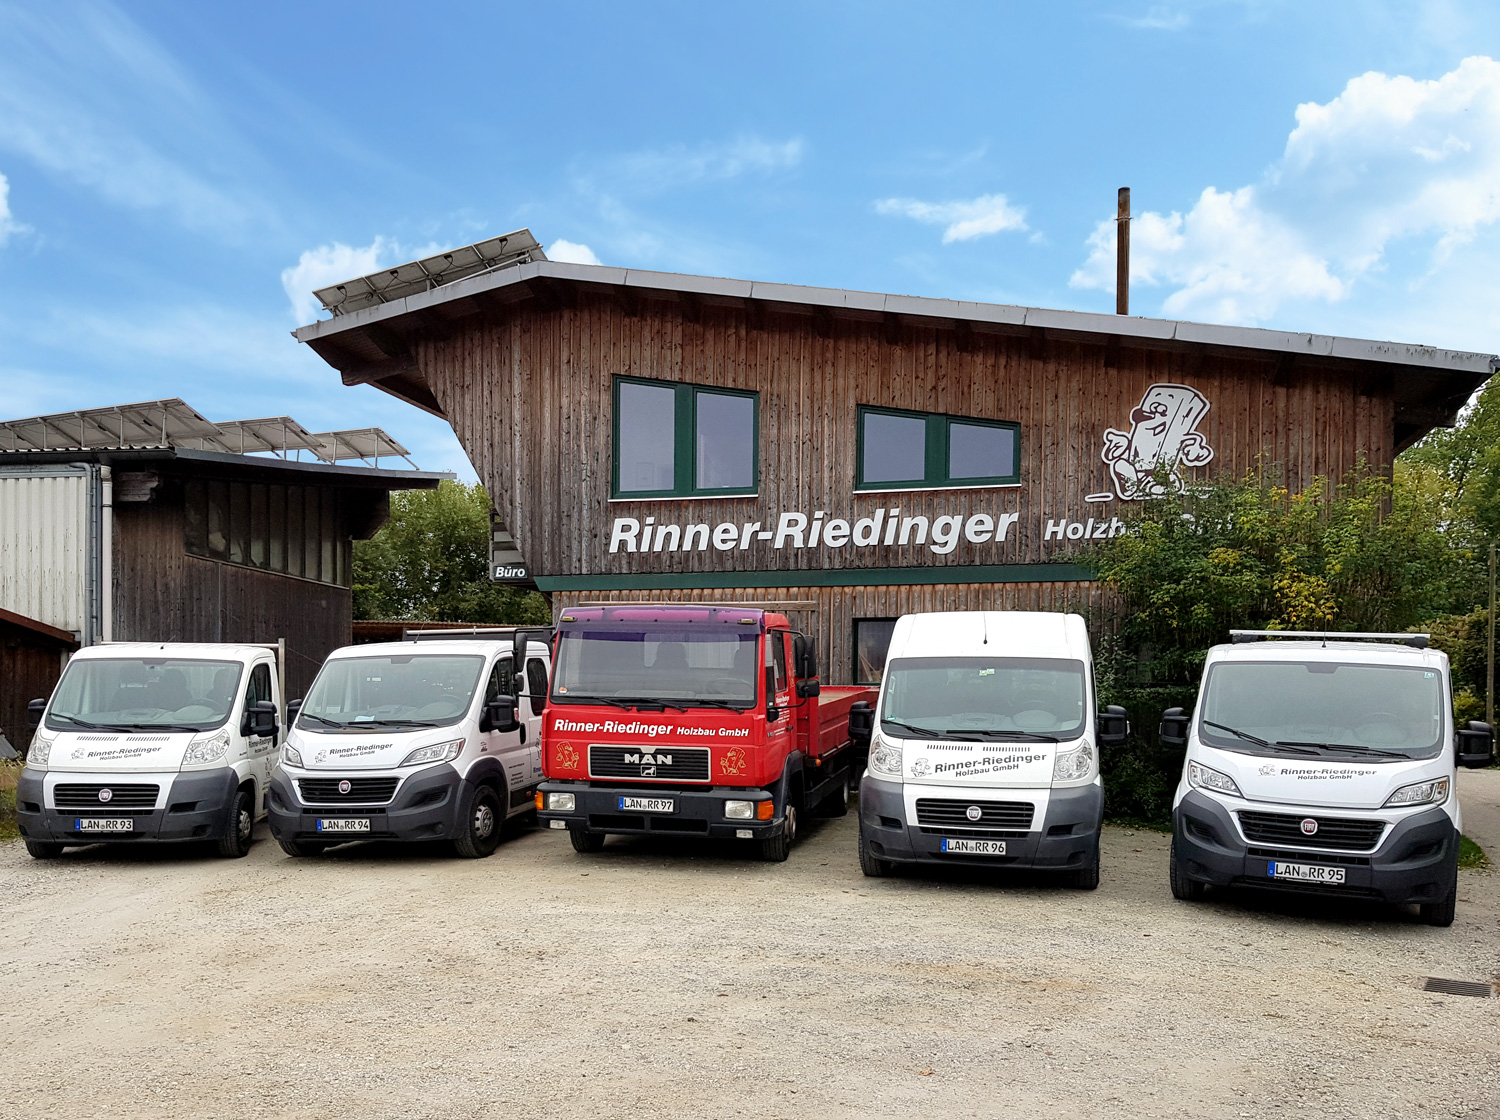 Rinner-Riedinger Holzbau GmbH aus Reichersdorf zwischen Landau a.d. Isar und Eichendorf